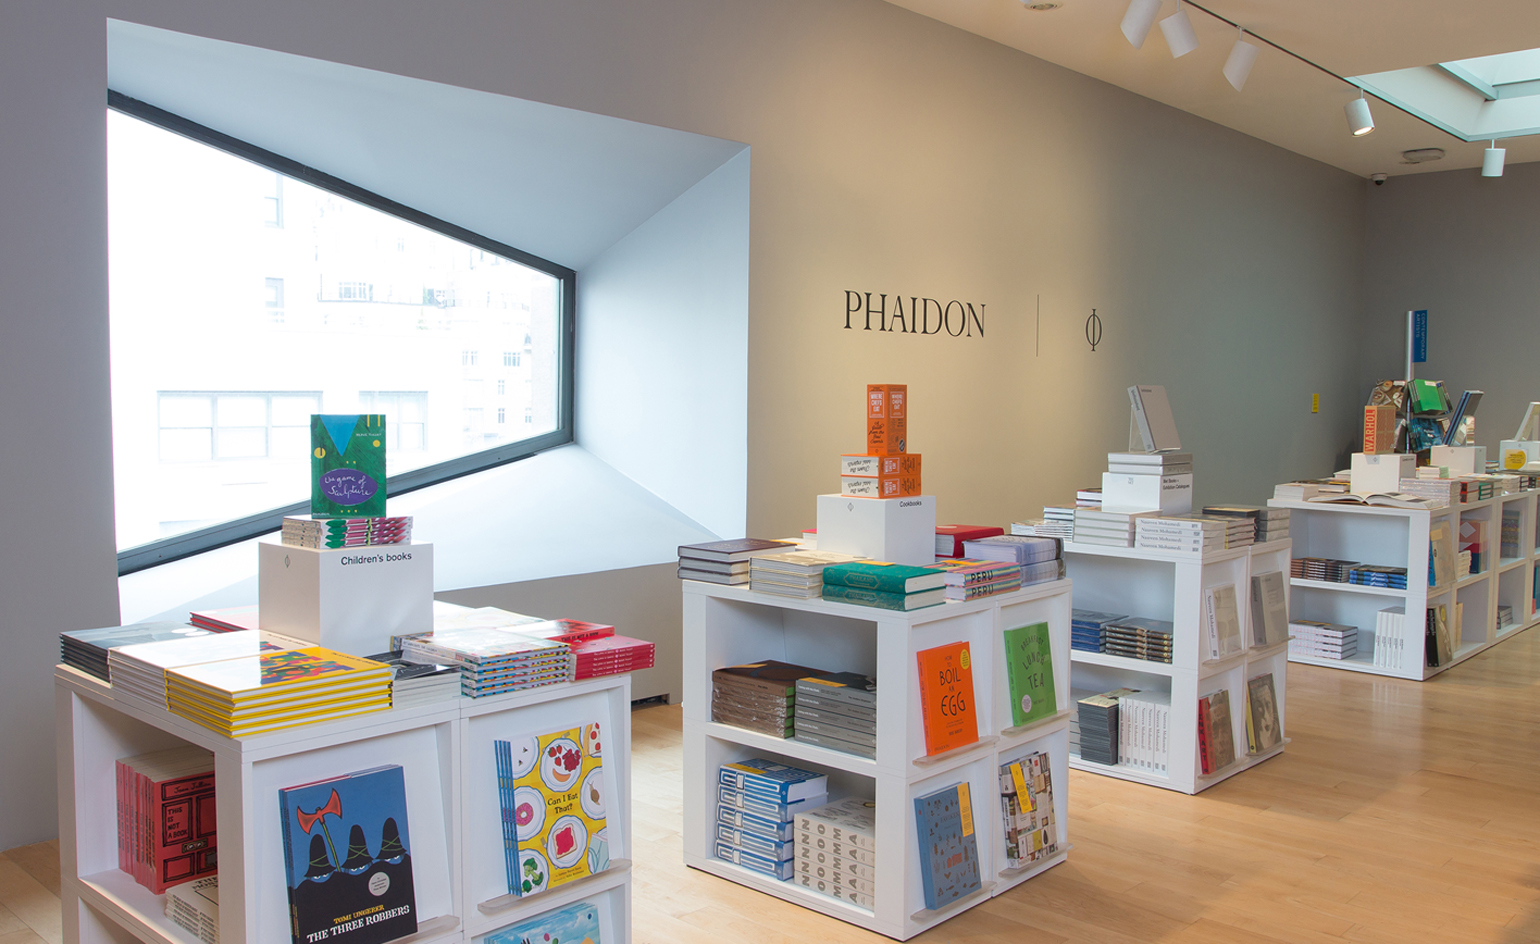 Met opens pop-up bookstore for new Met Breuer